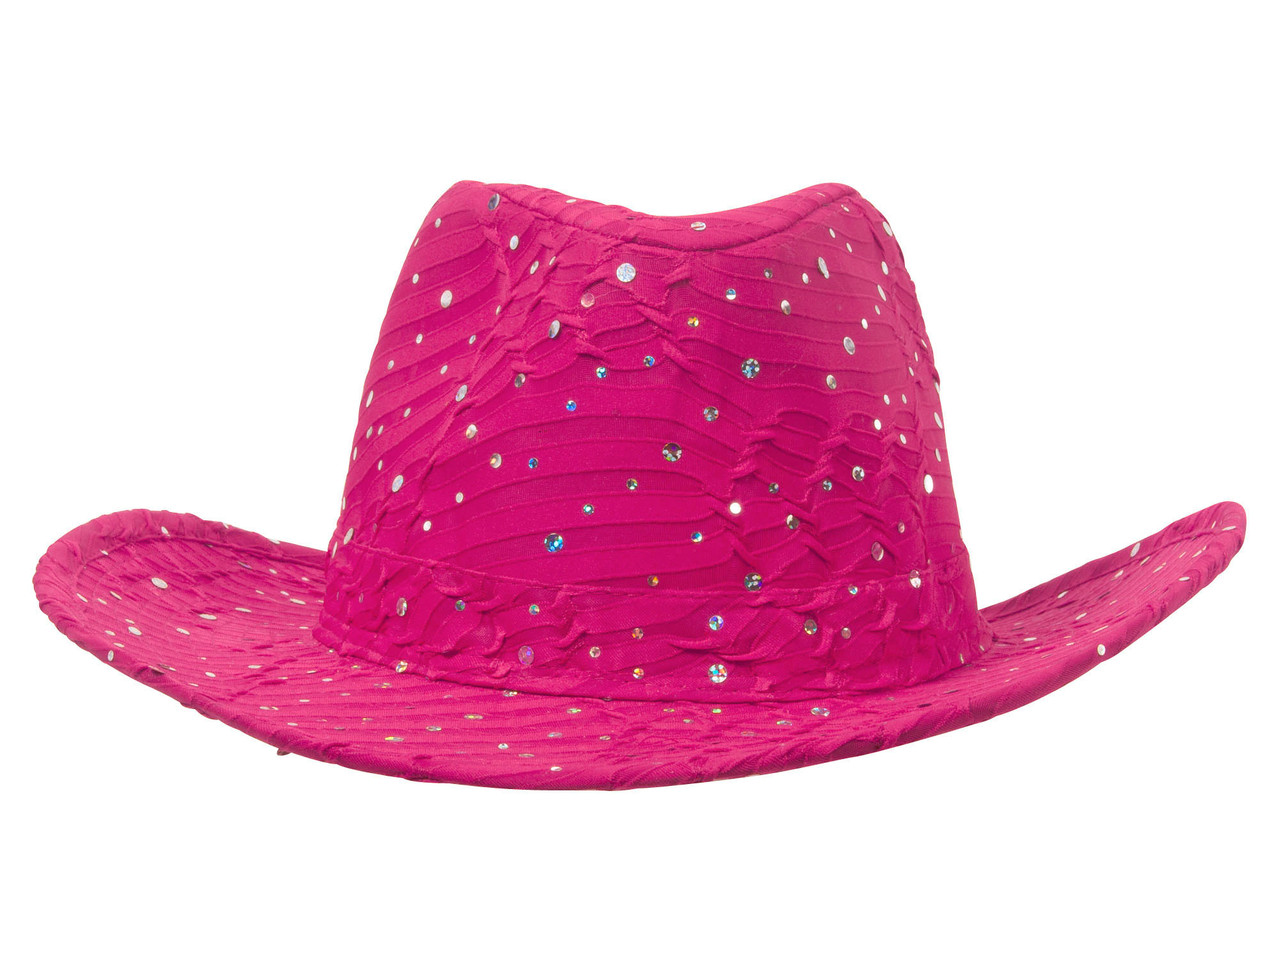 TOP HEADWEAR TopHeadwear Glitter Sequin Trim Newsboy Hat